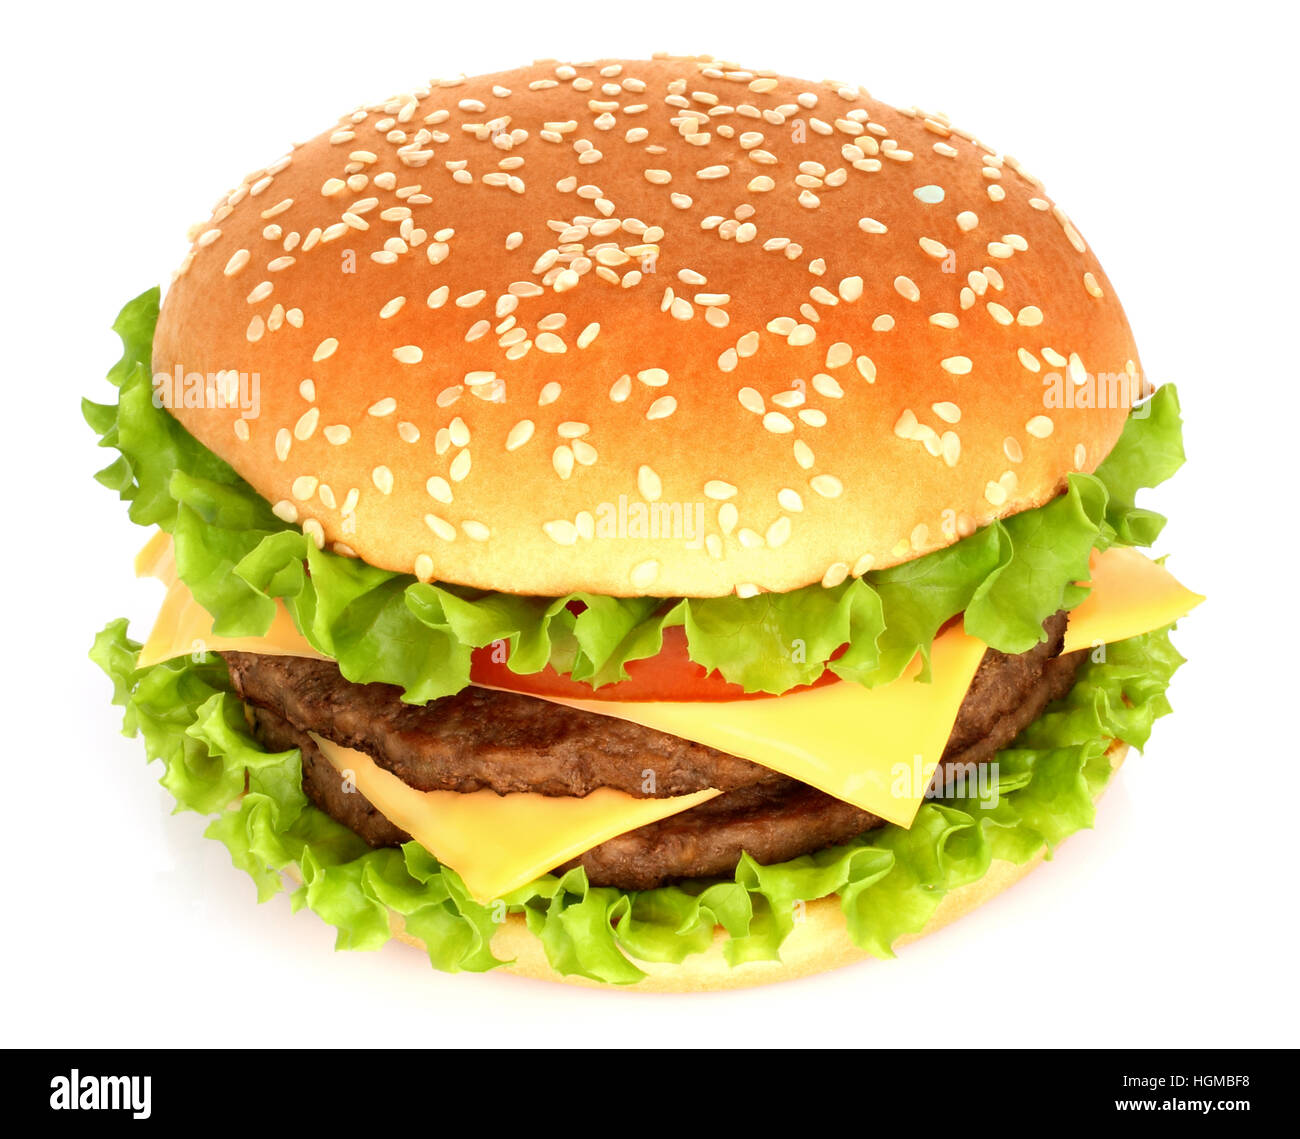 Big hamburger on white background close-up Stock Photo